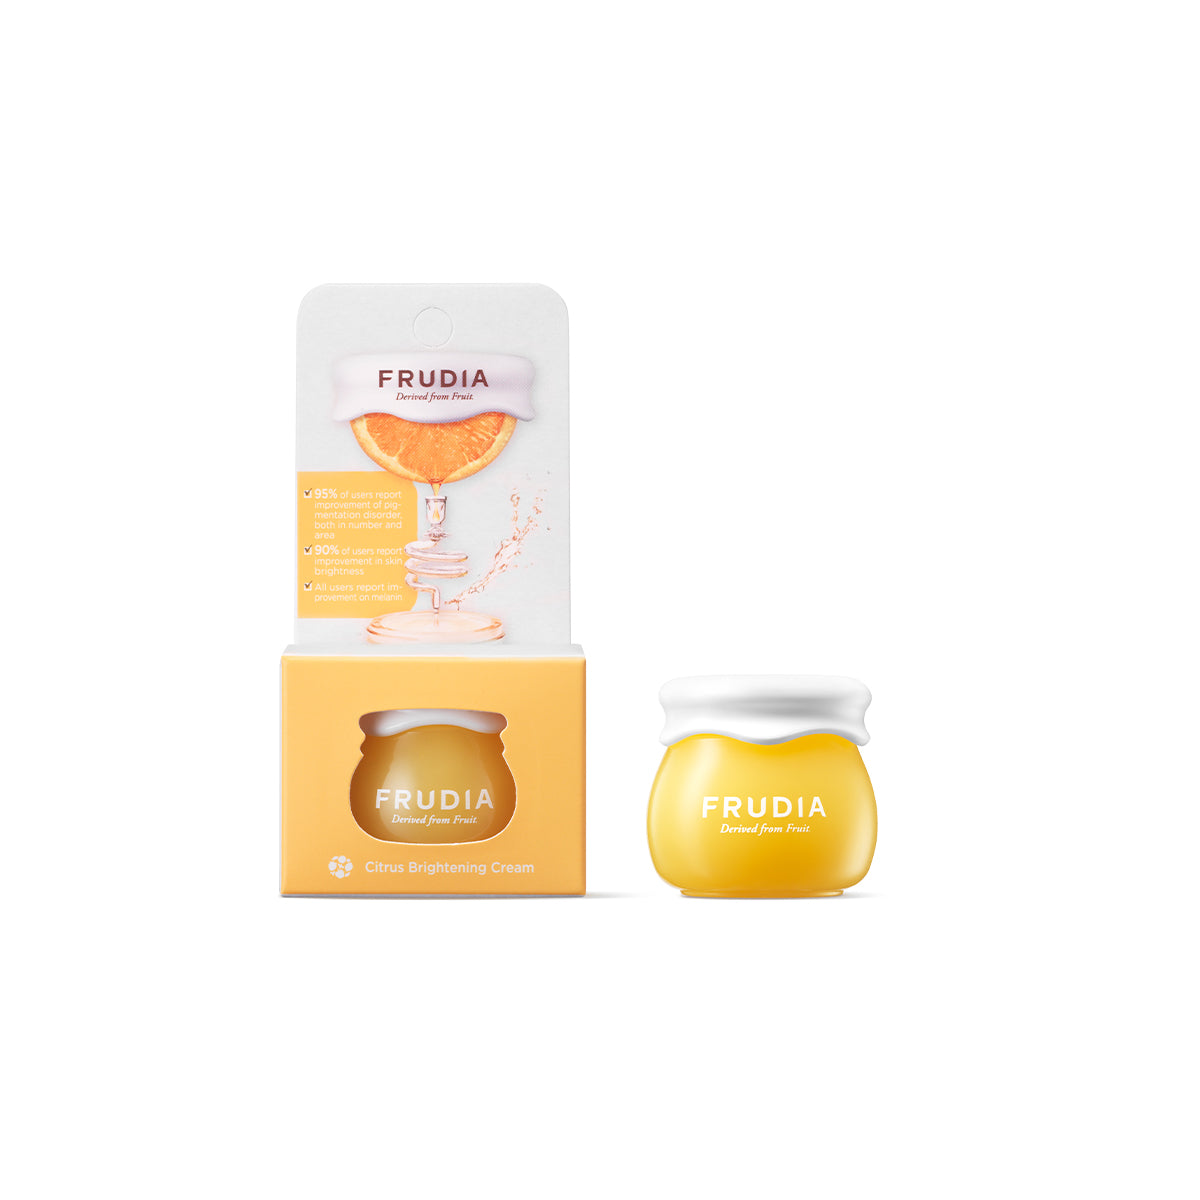 Frudia Citrus Brightening Cream (Mini) - Crema viso Frudia